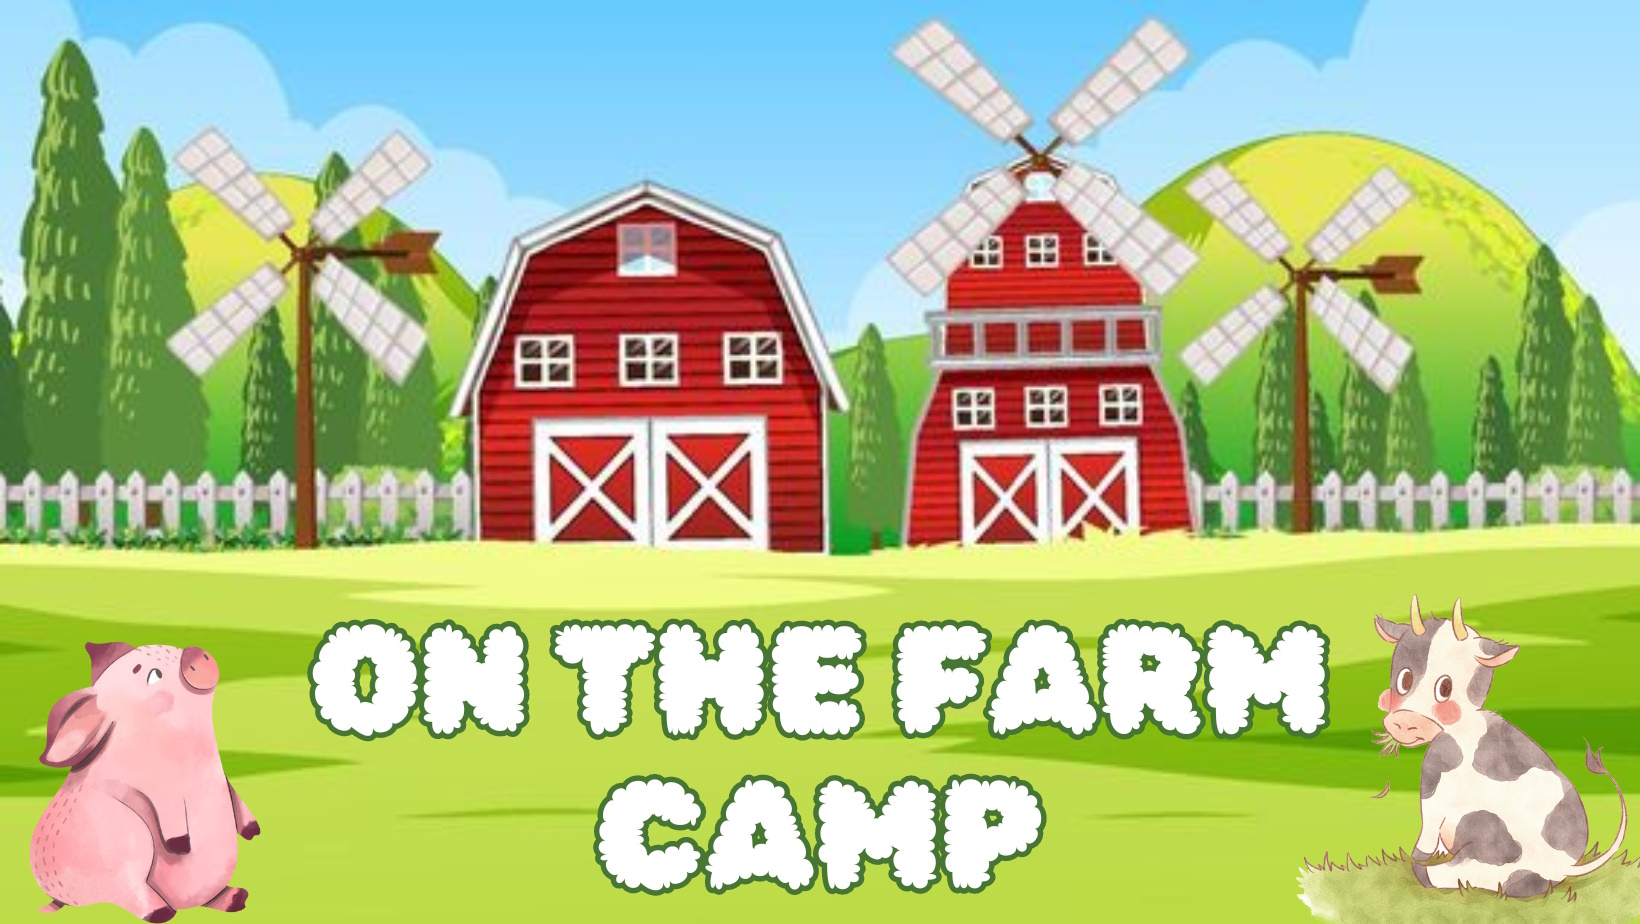 On The Farm Camp